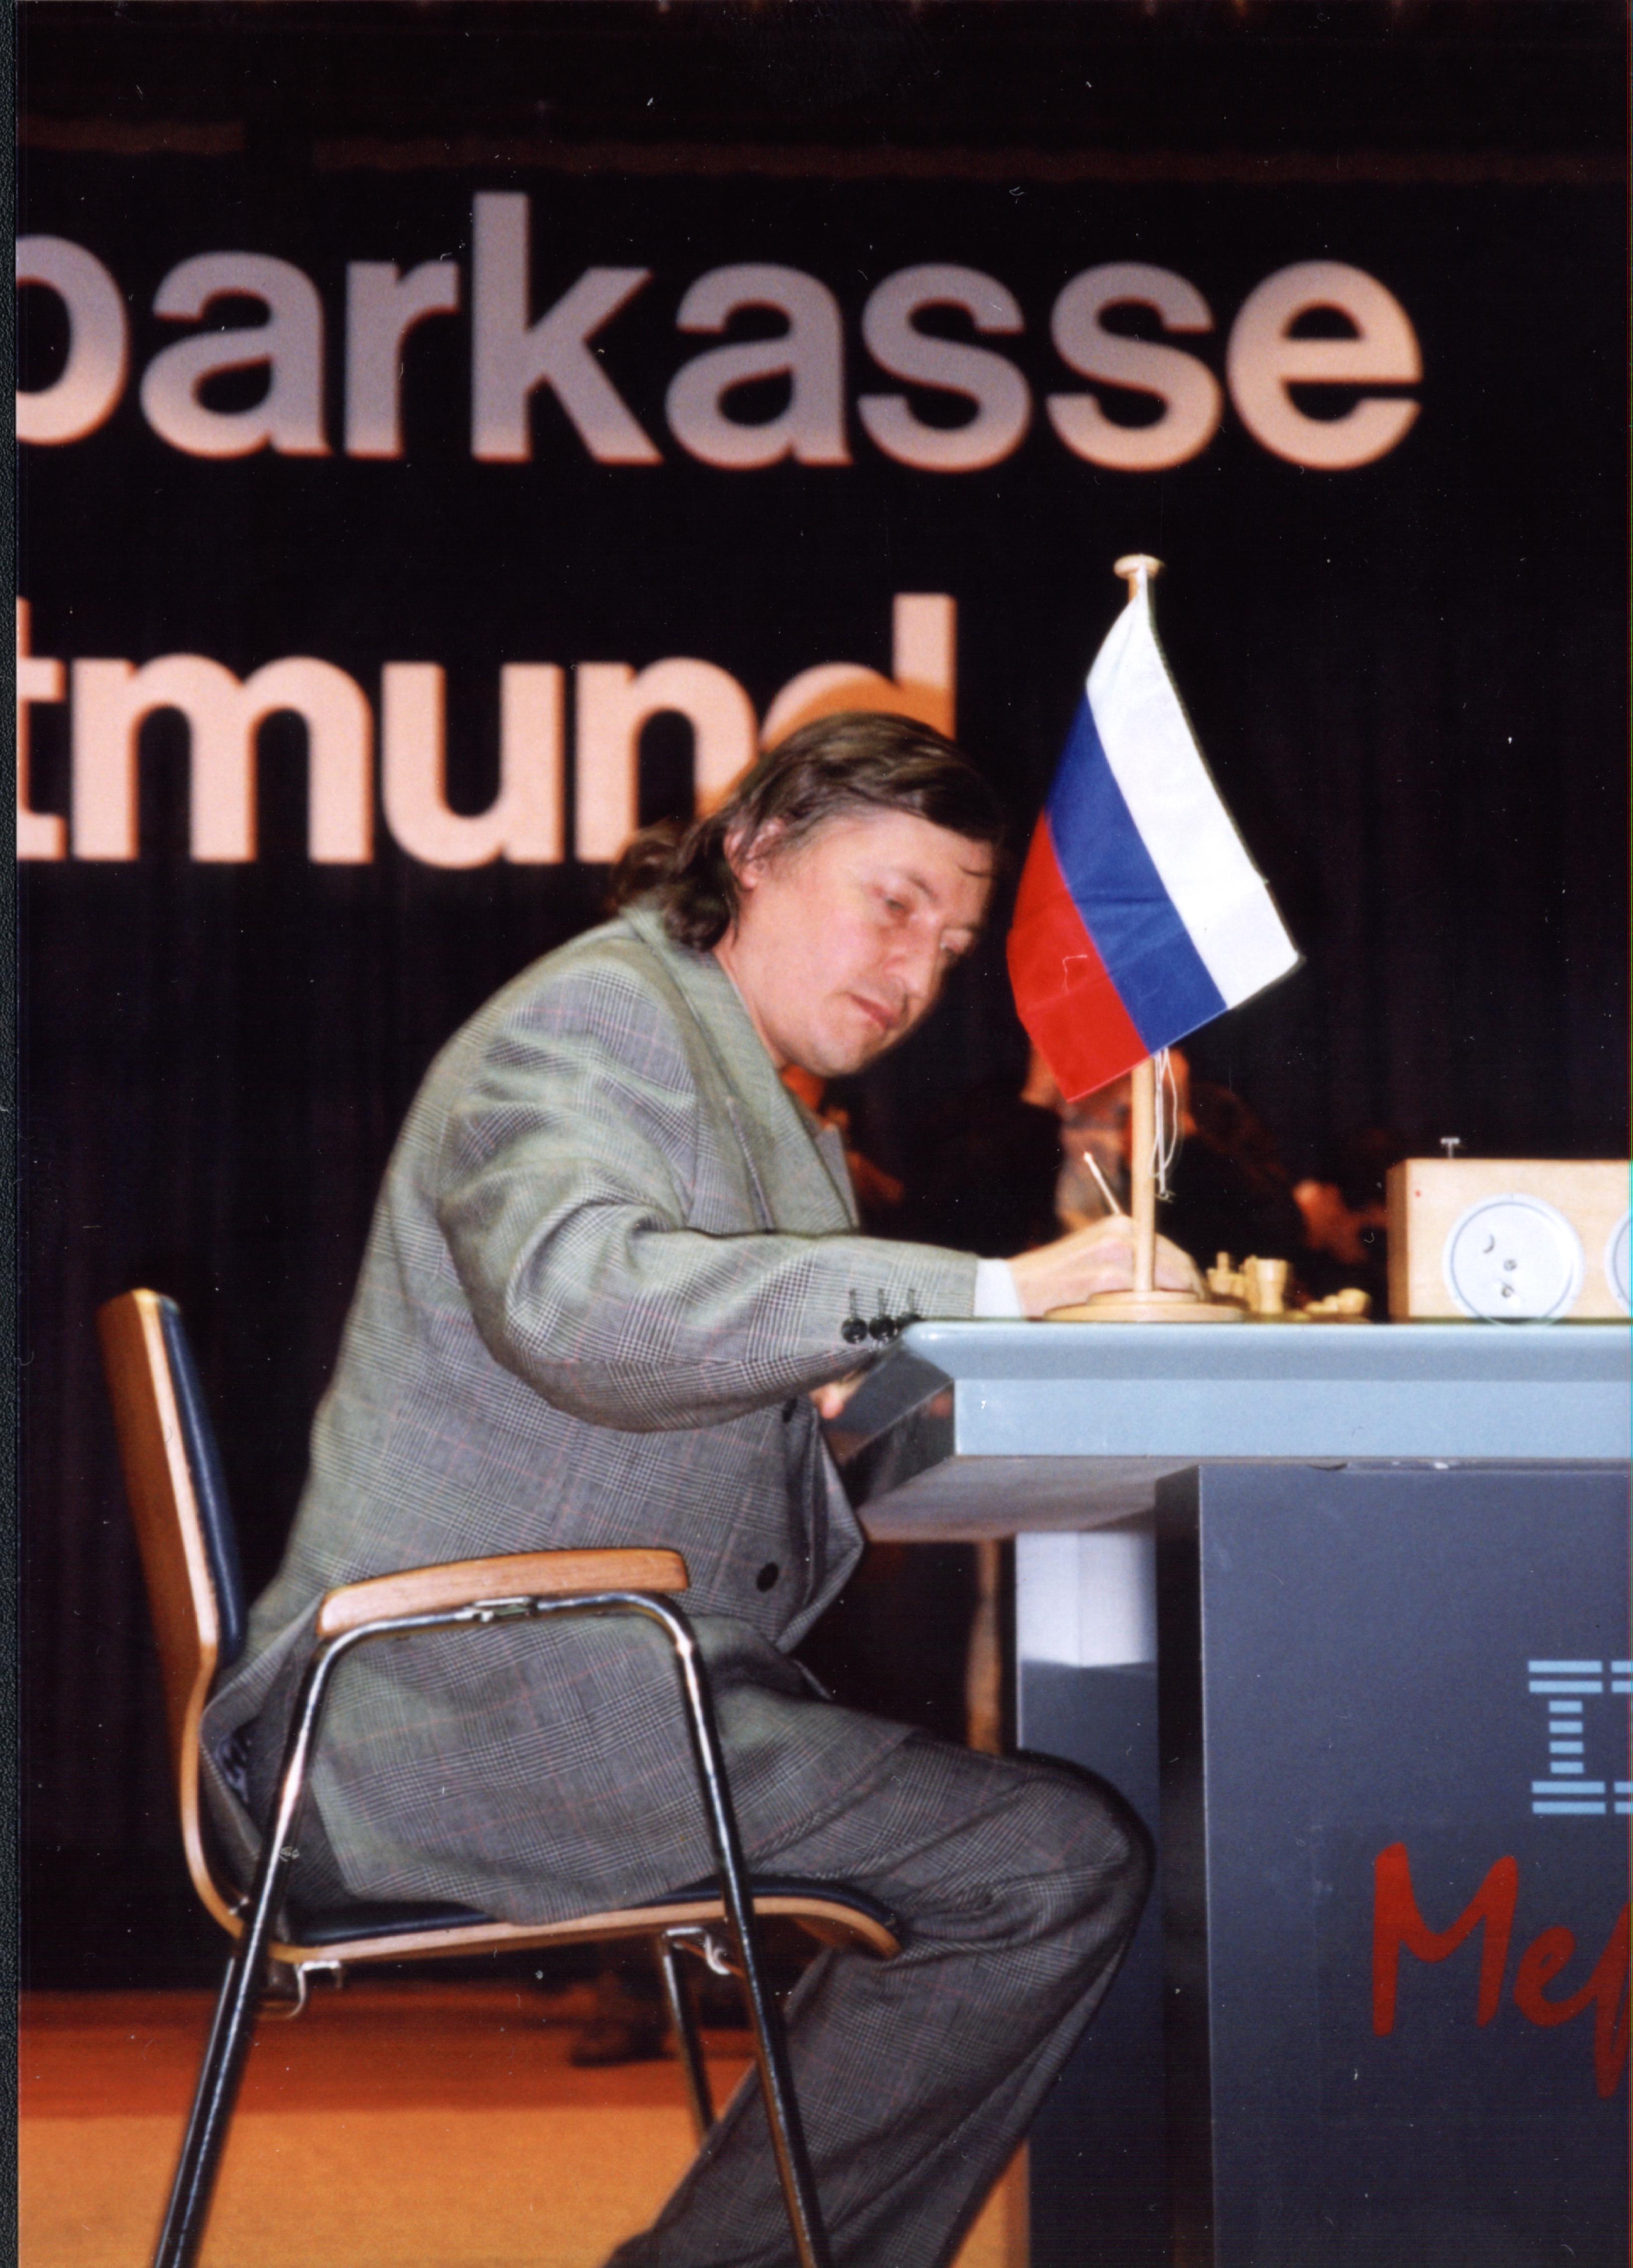 Anatoly Karpov, retrato de um campeão que quer “levar o xadrez a